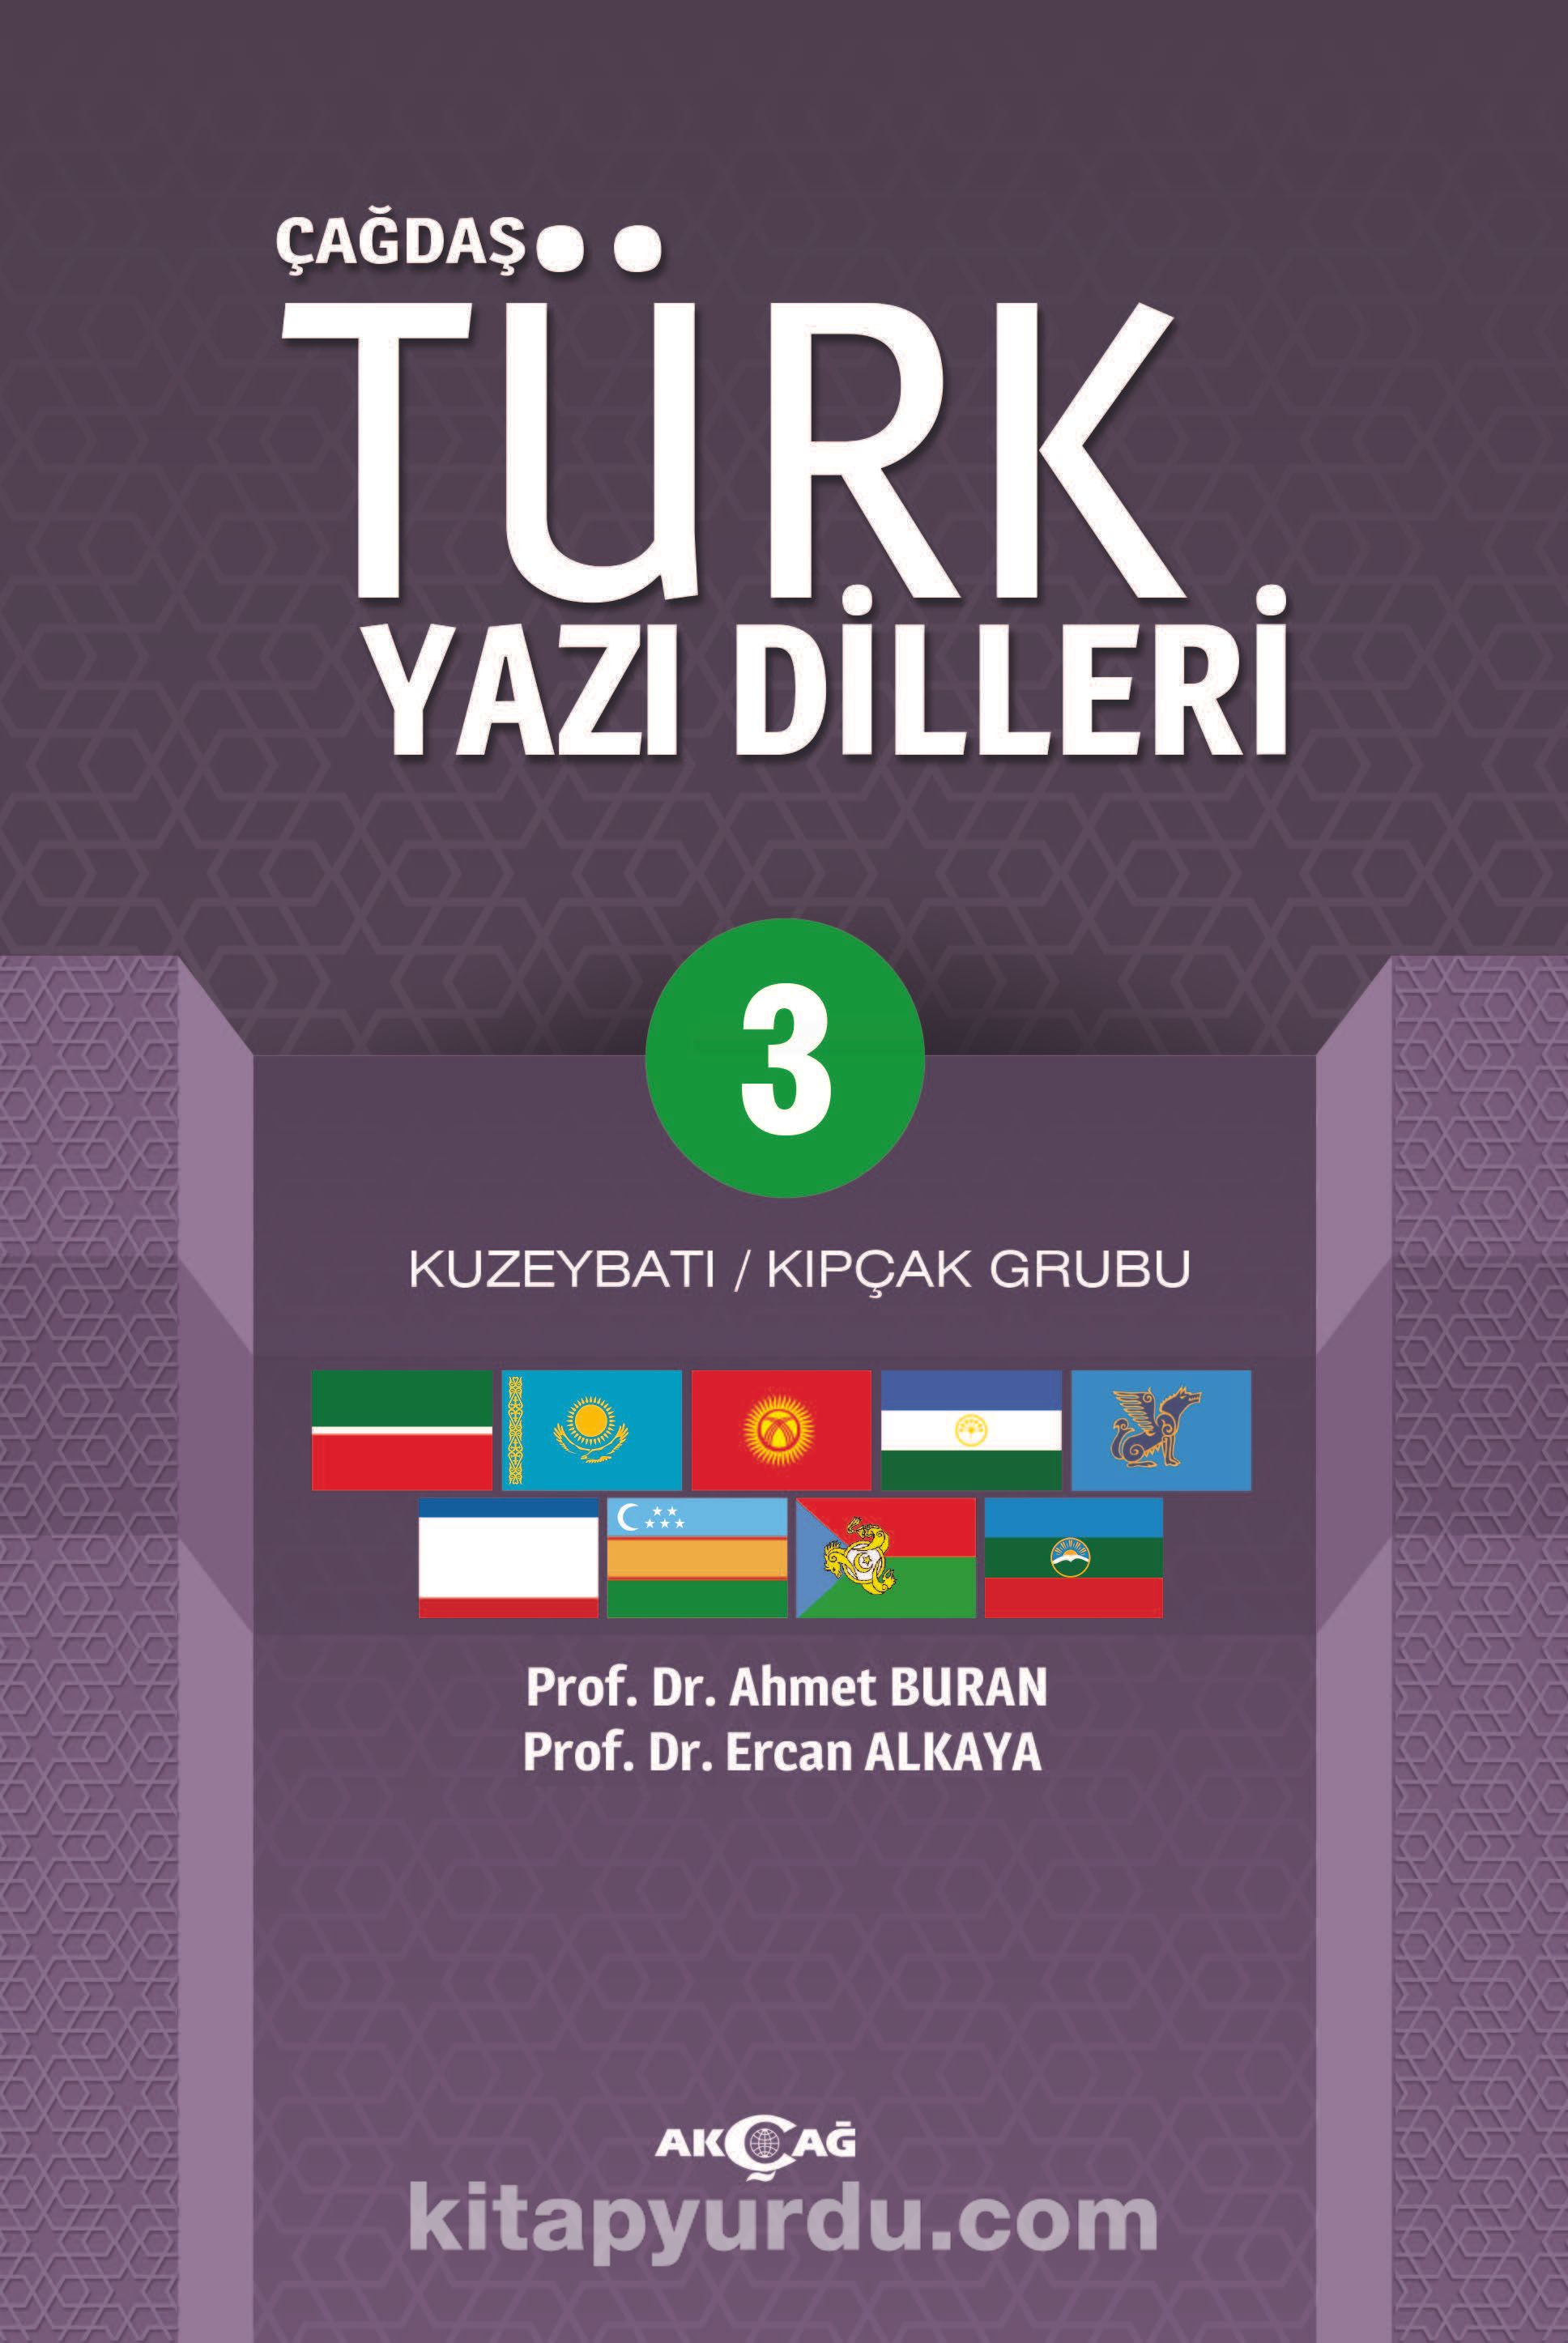 Cagdas Turk Yazi Dilleri 3 Kuzeybati Kipcak Grubu Ercan Alkaya Kitapyurdu Com